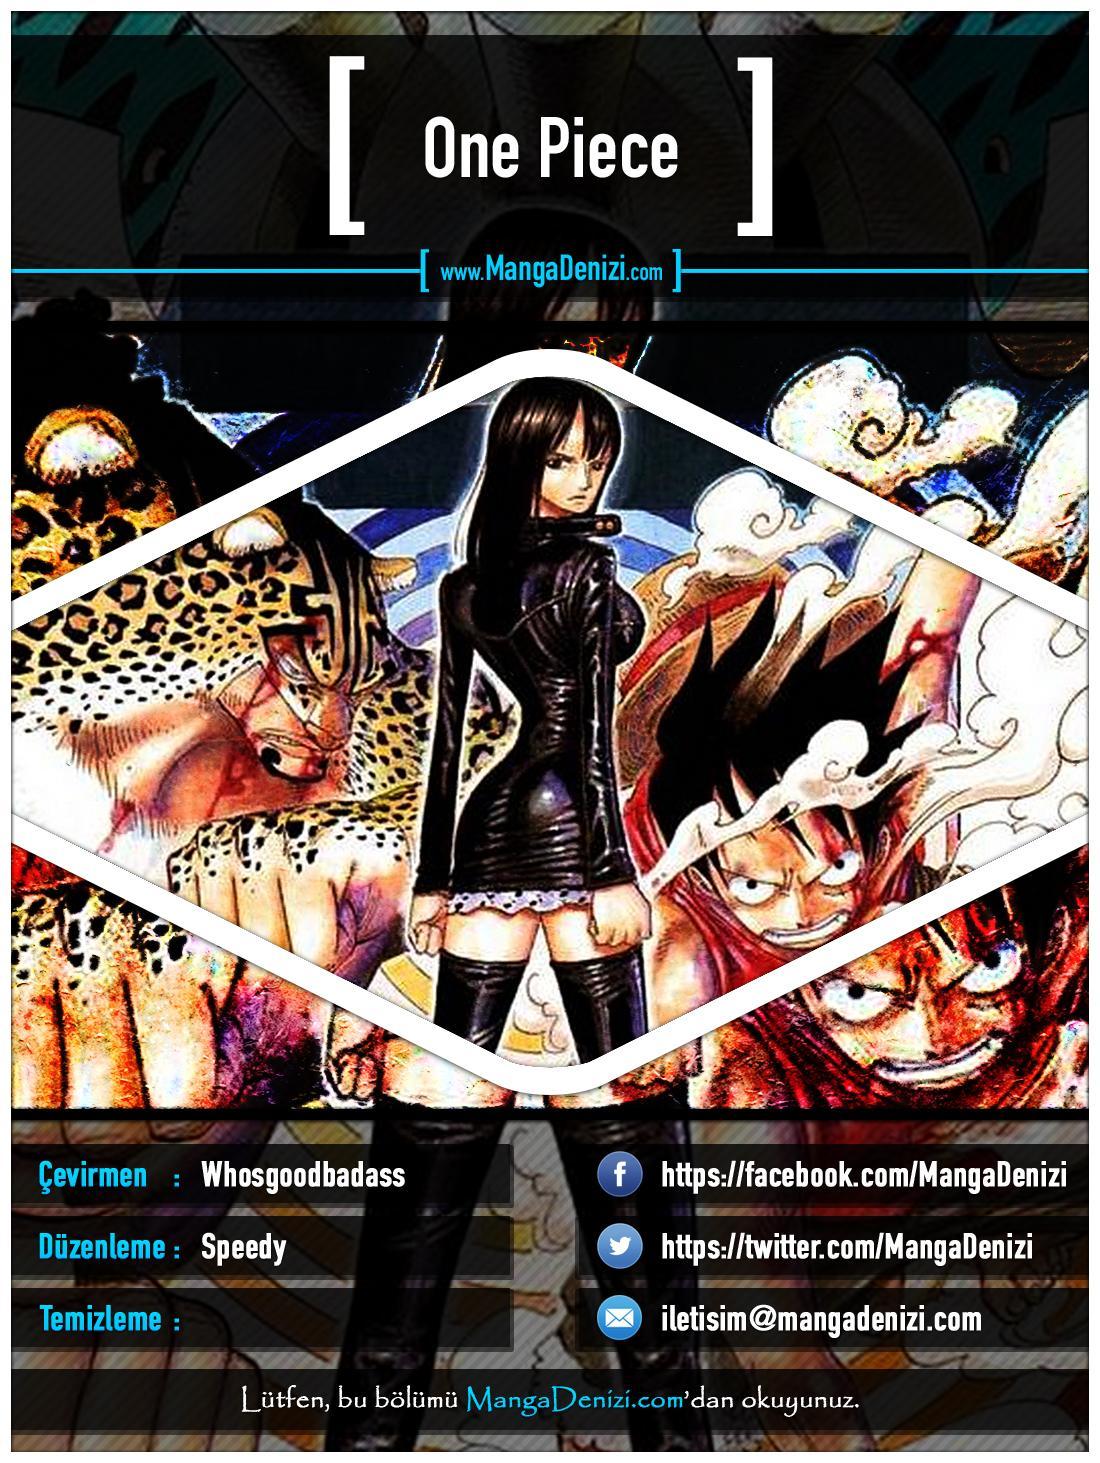 One Piece [Renkli] mangasının 0360 bölümünün 1. sayfasını okuyorsunuz.